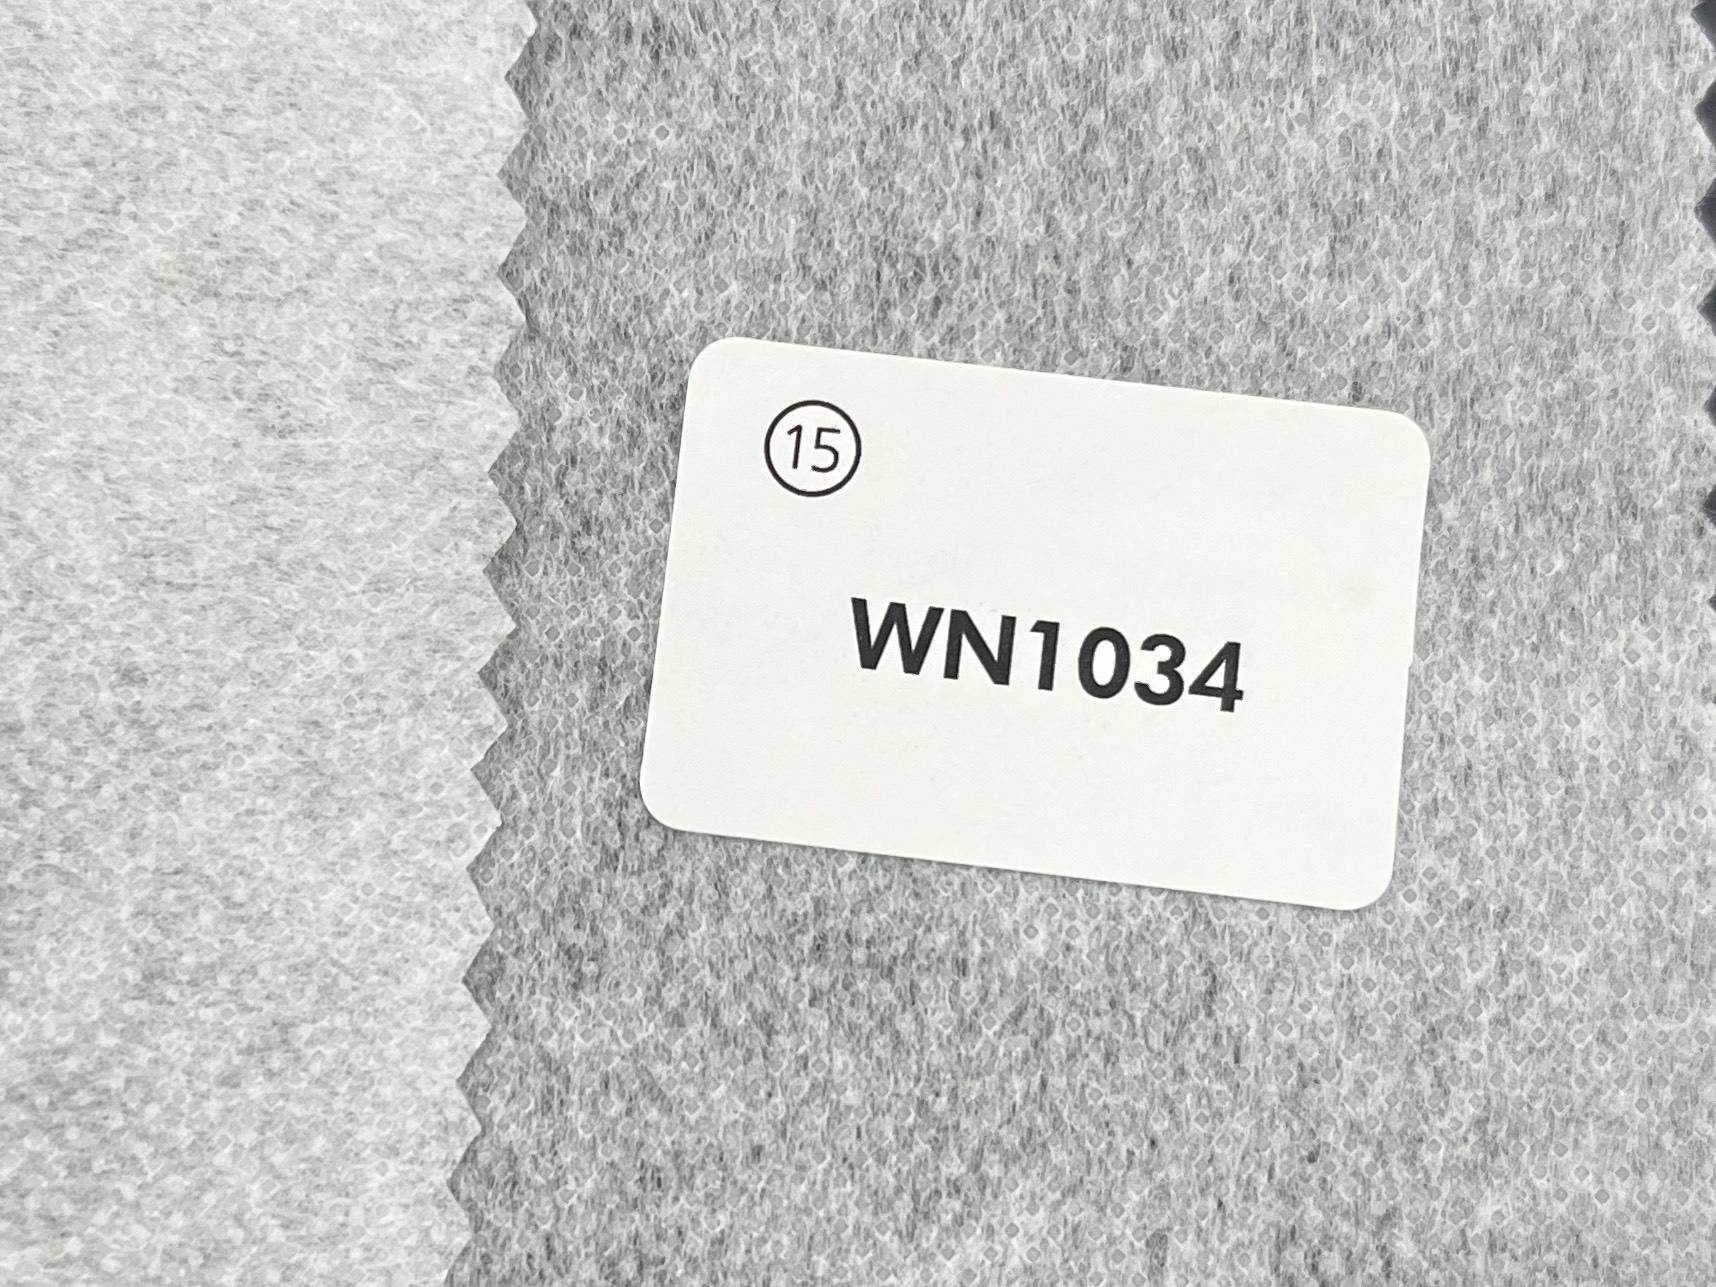 WN1034